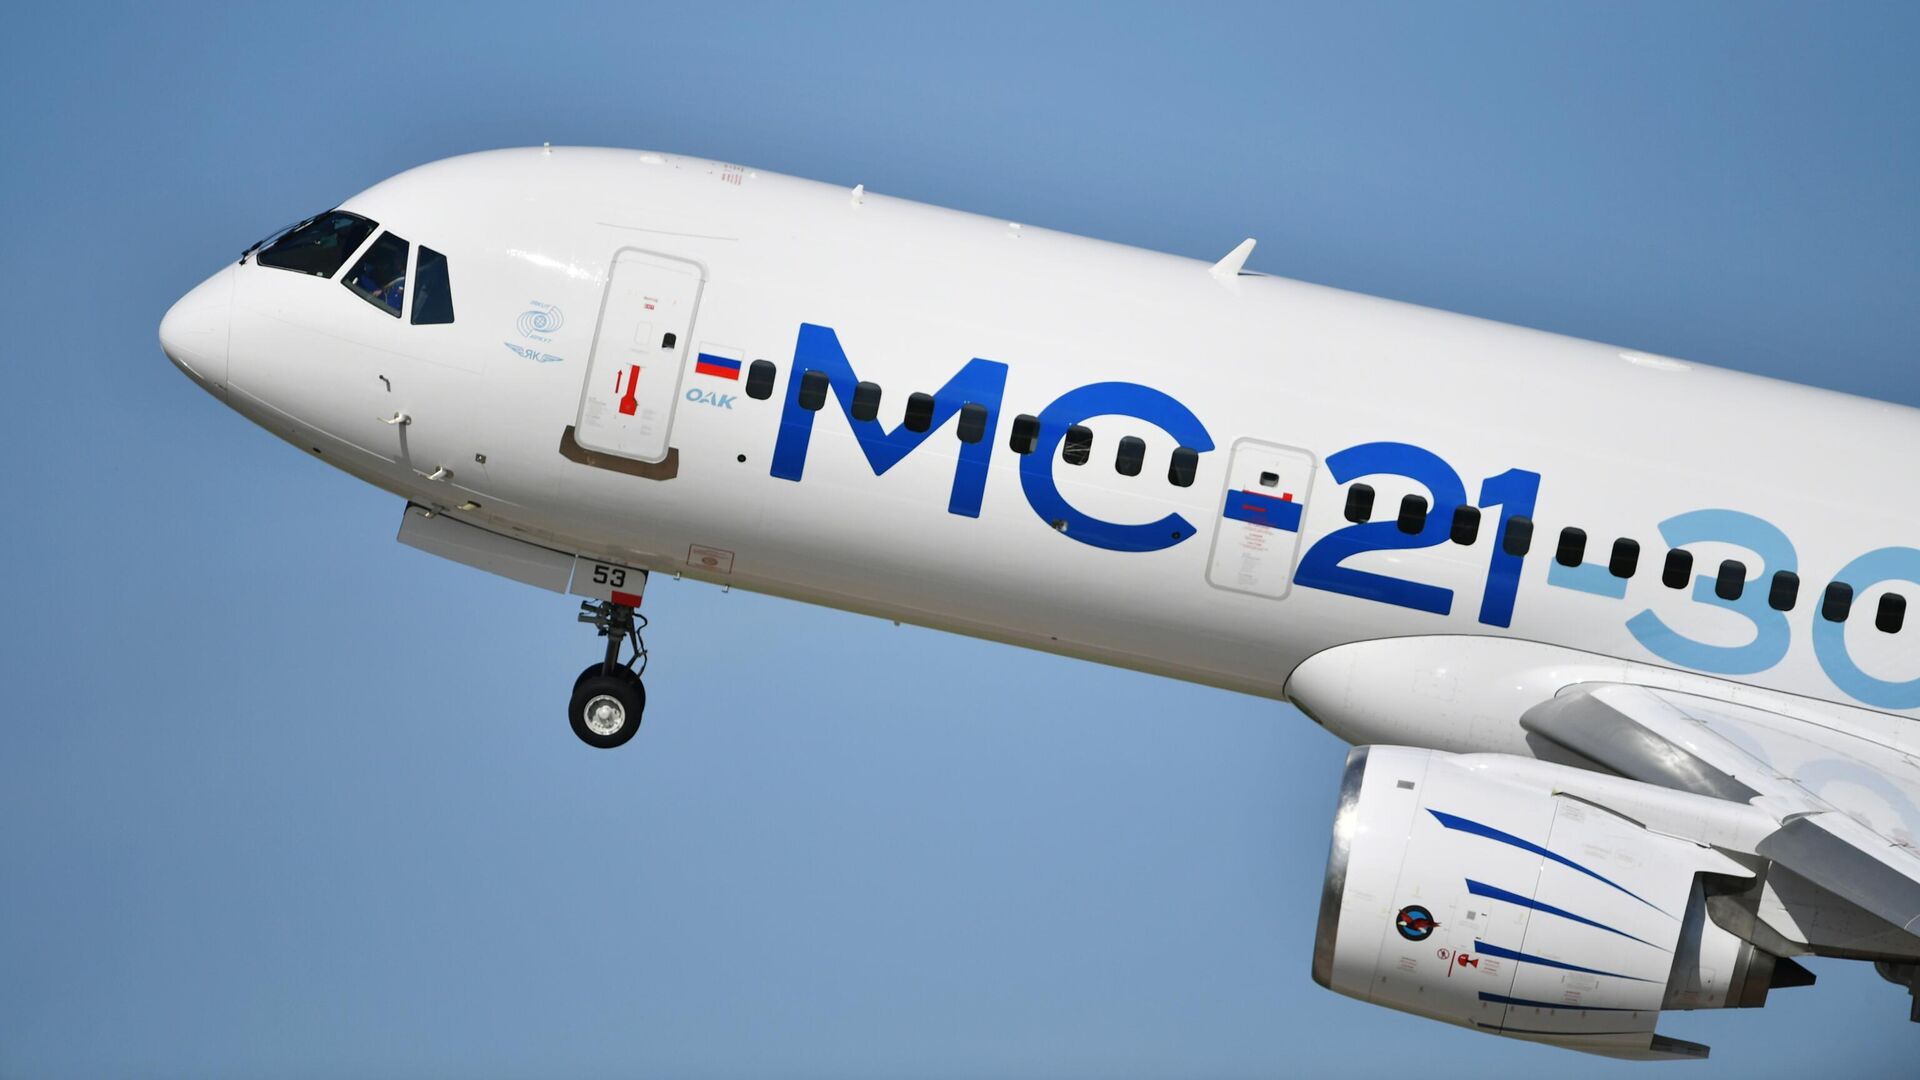 Первый полет самолета МС-21 полностью на российских системах состоится в 2024 году